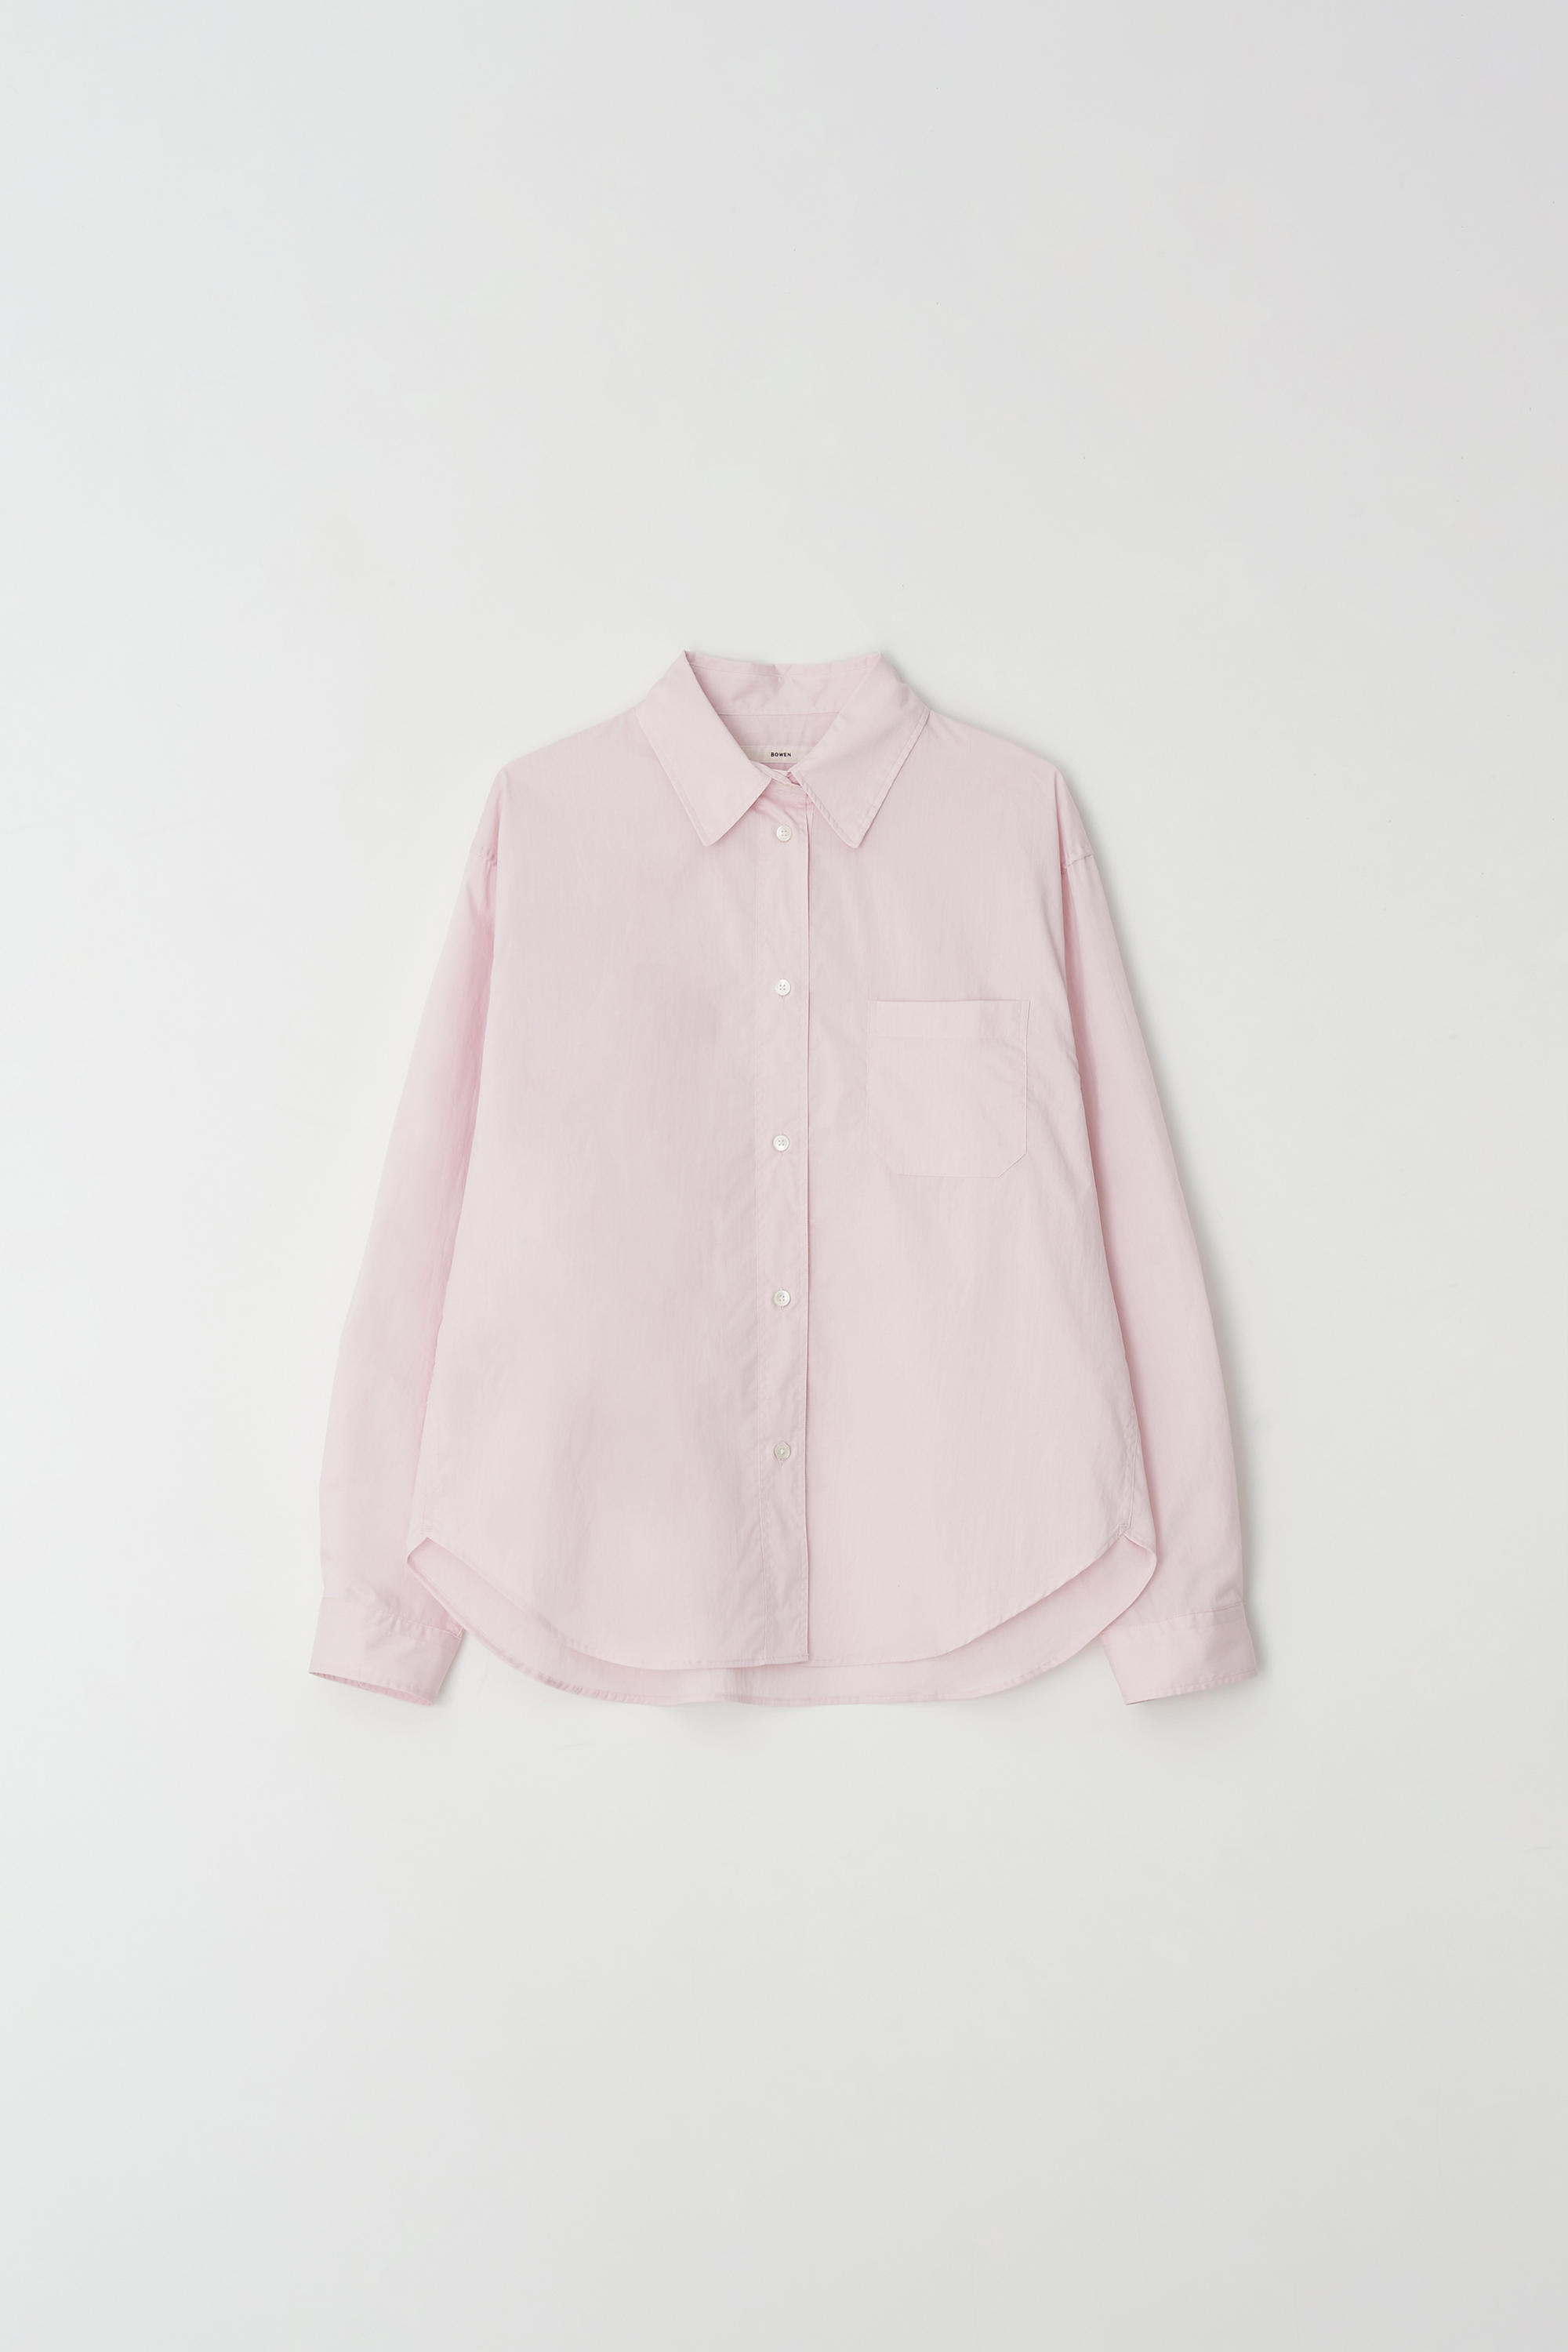 에센셜 셔츠 프림로즈 핑크